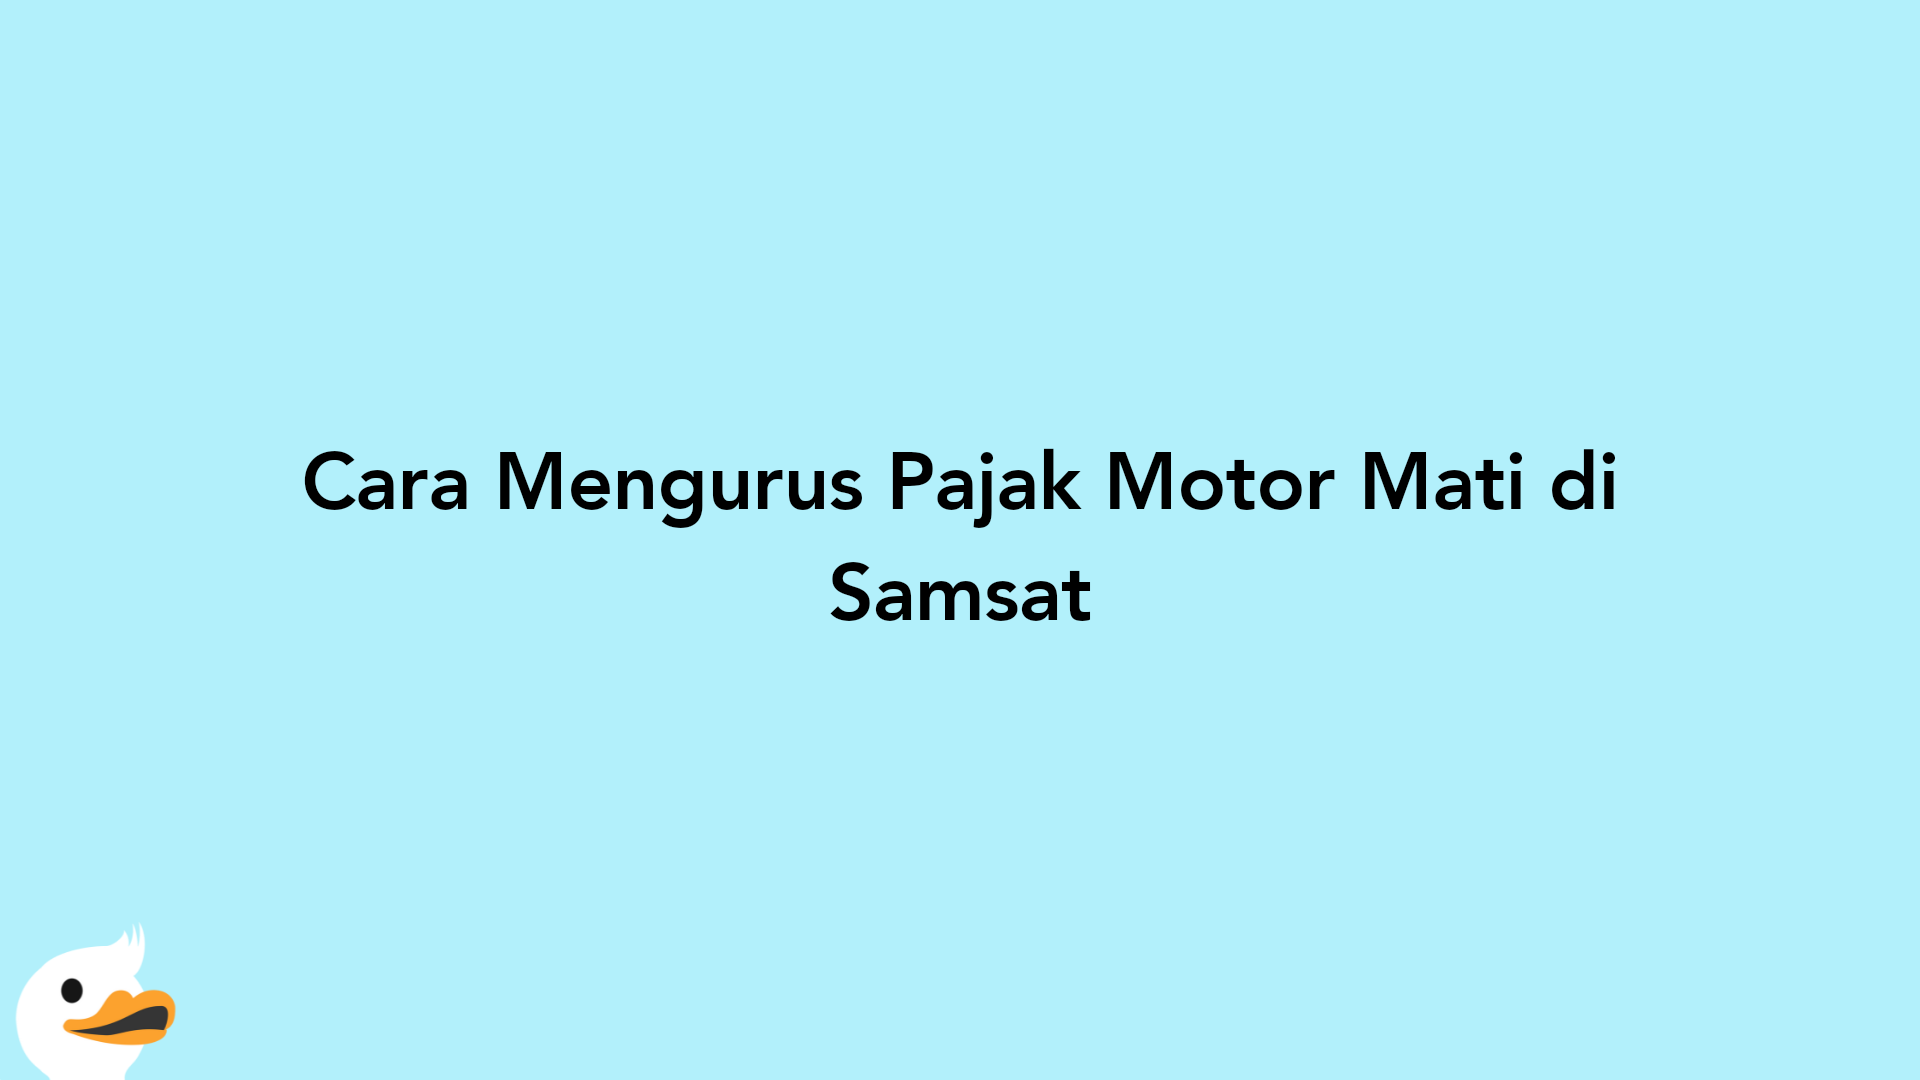 Cara Mengurus Pajak Motor Mati di Samsat